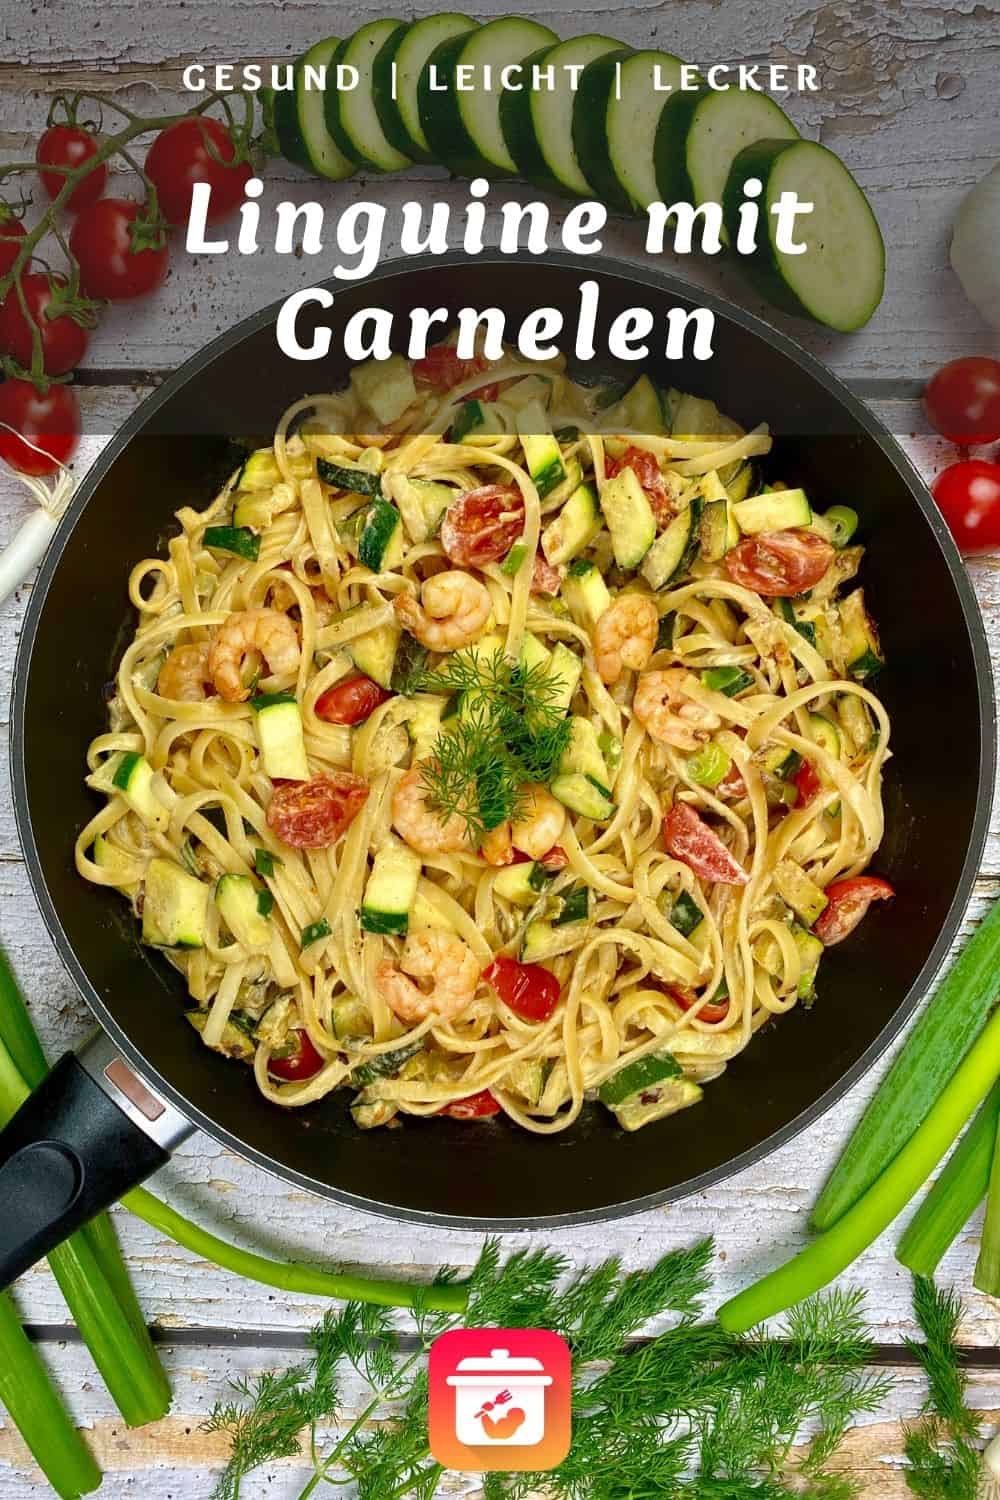 Linguine mit Garnelen - Pasta mit Garnelen und Zucchini